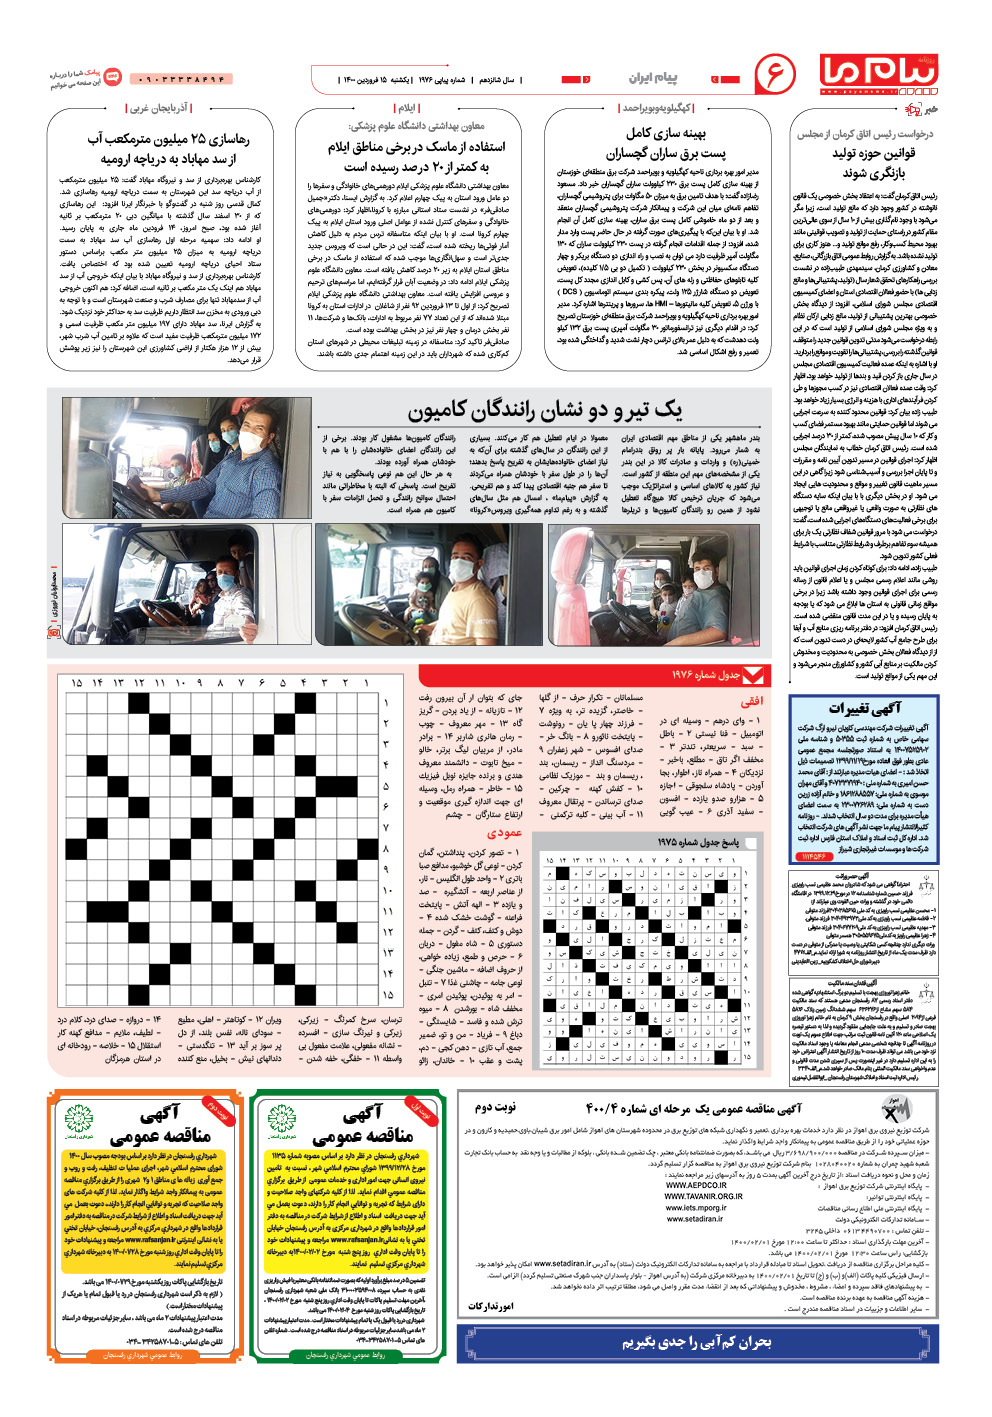 صفحه پیام ایران شماره چارسوق روزنامه پیام ما